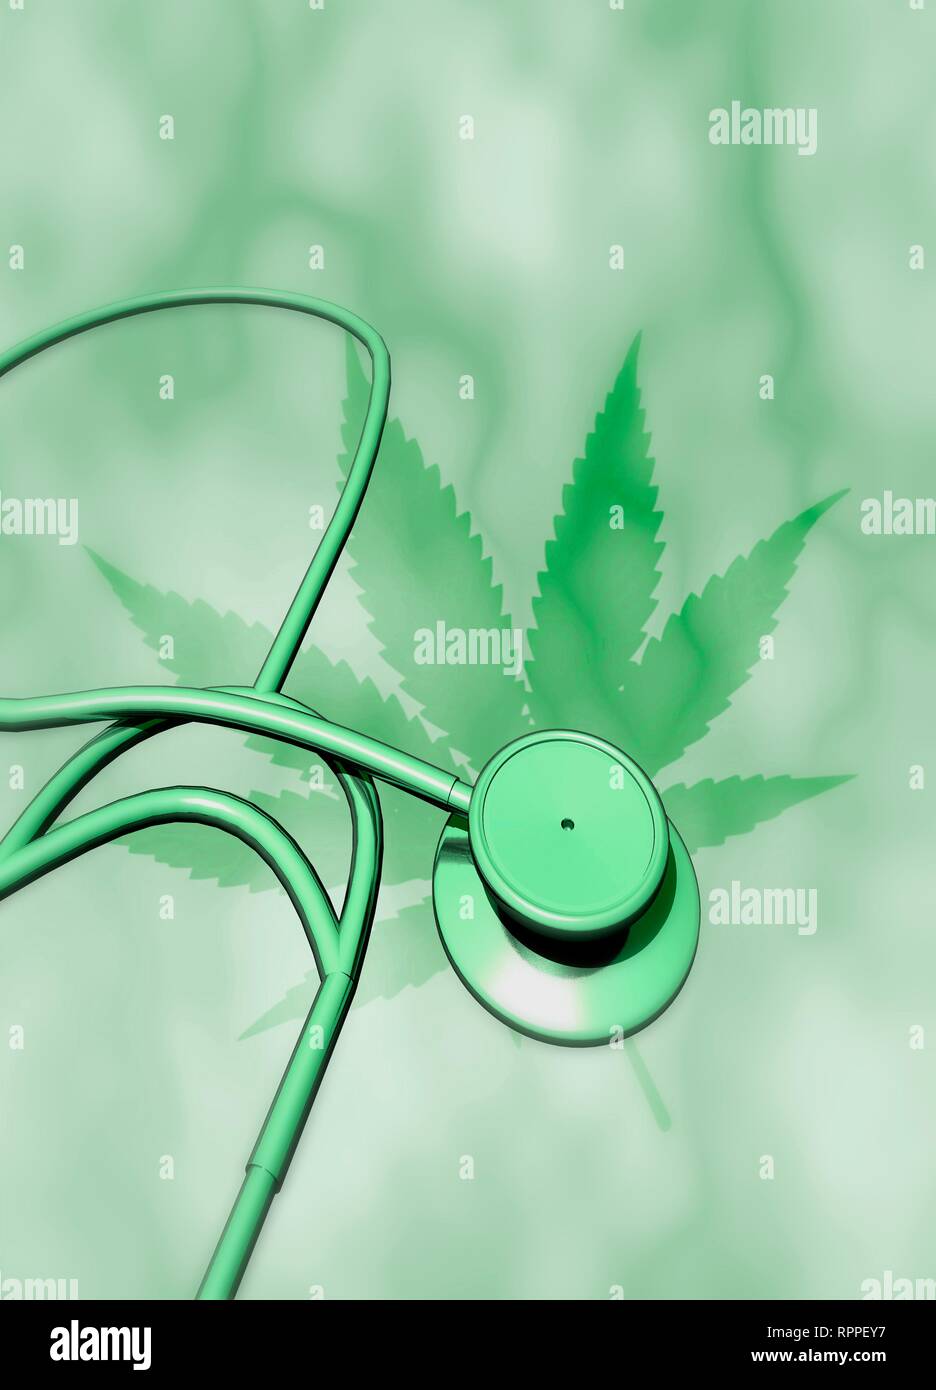 Die medizinische Verwendung von Cannabis, konzeptionelle Bild. Blatt der Pflanze Cannabis (Cannabis sativa) mit Stethoskop. Cannabis (auch als Marihuana bekannt) enthält die psychoaktiven chemischen Tetrahydrocannabinol (THC). Es ist medizinisch sinnvoll wegen seiner Fähigkeit, Schmerzen zu lindern, die Appetit und Kontrolle des Muskelkrämpfe. Cannabis hat das Potenzial, die Nebenwirkungen der Chemotherapie und die Symptome von Bedingungen, einschließlich AIDS, multipler Sklerose und chronische Schmerzen von nervenschäden zu behandeln. Stockfoto